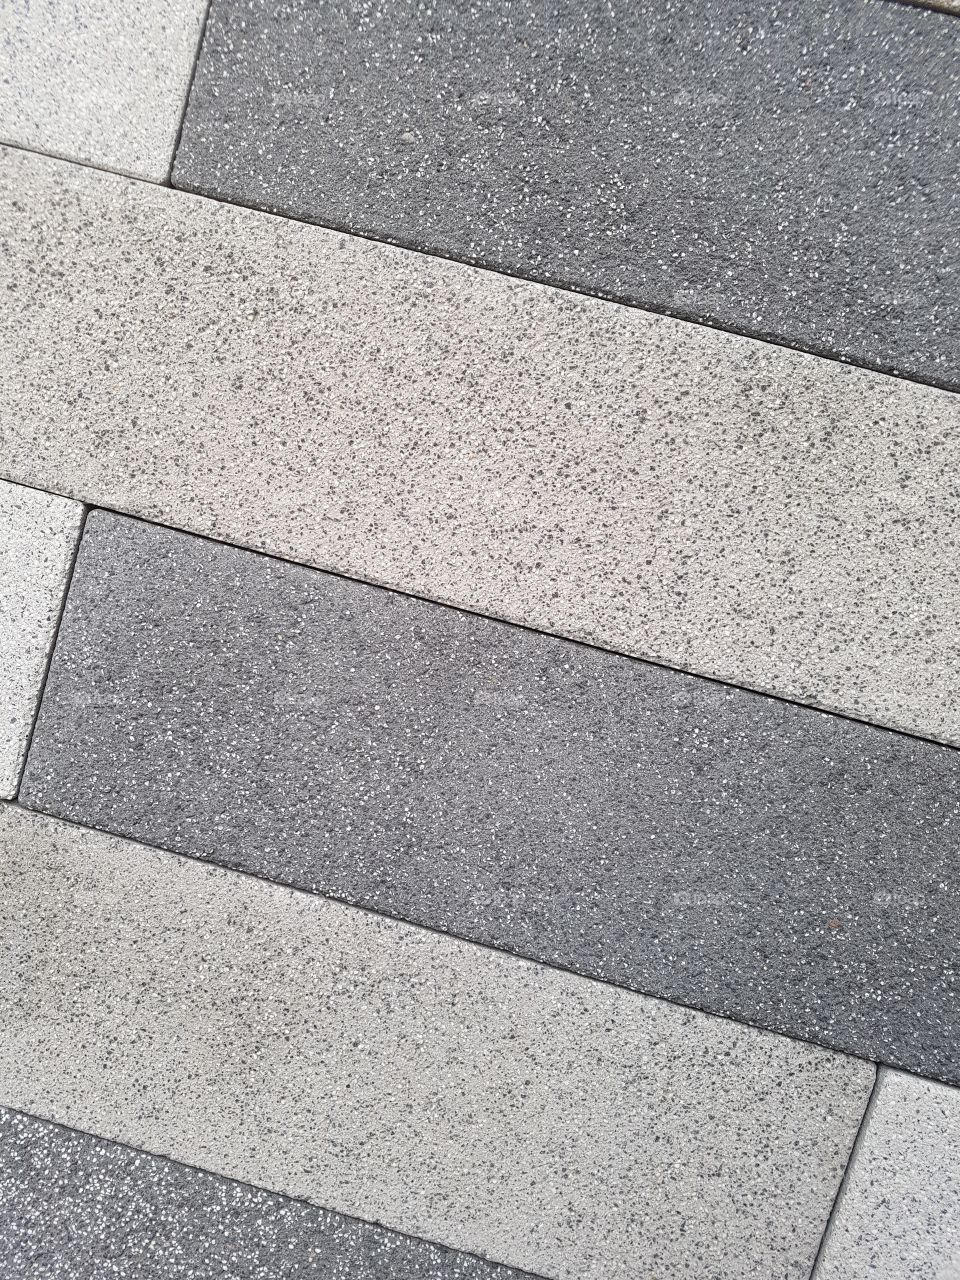 Cement elements of floor